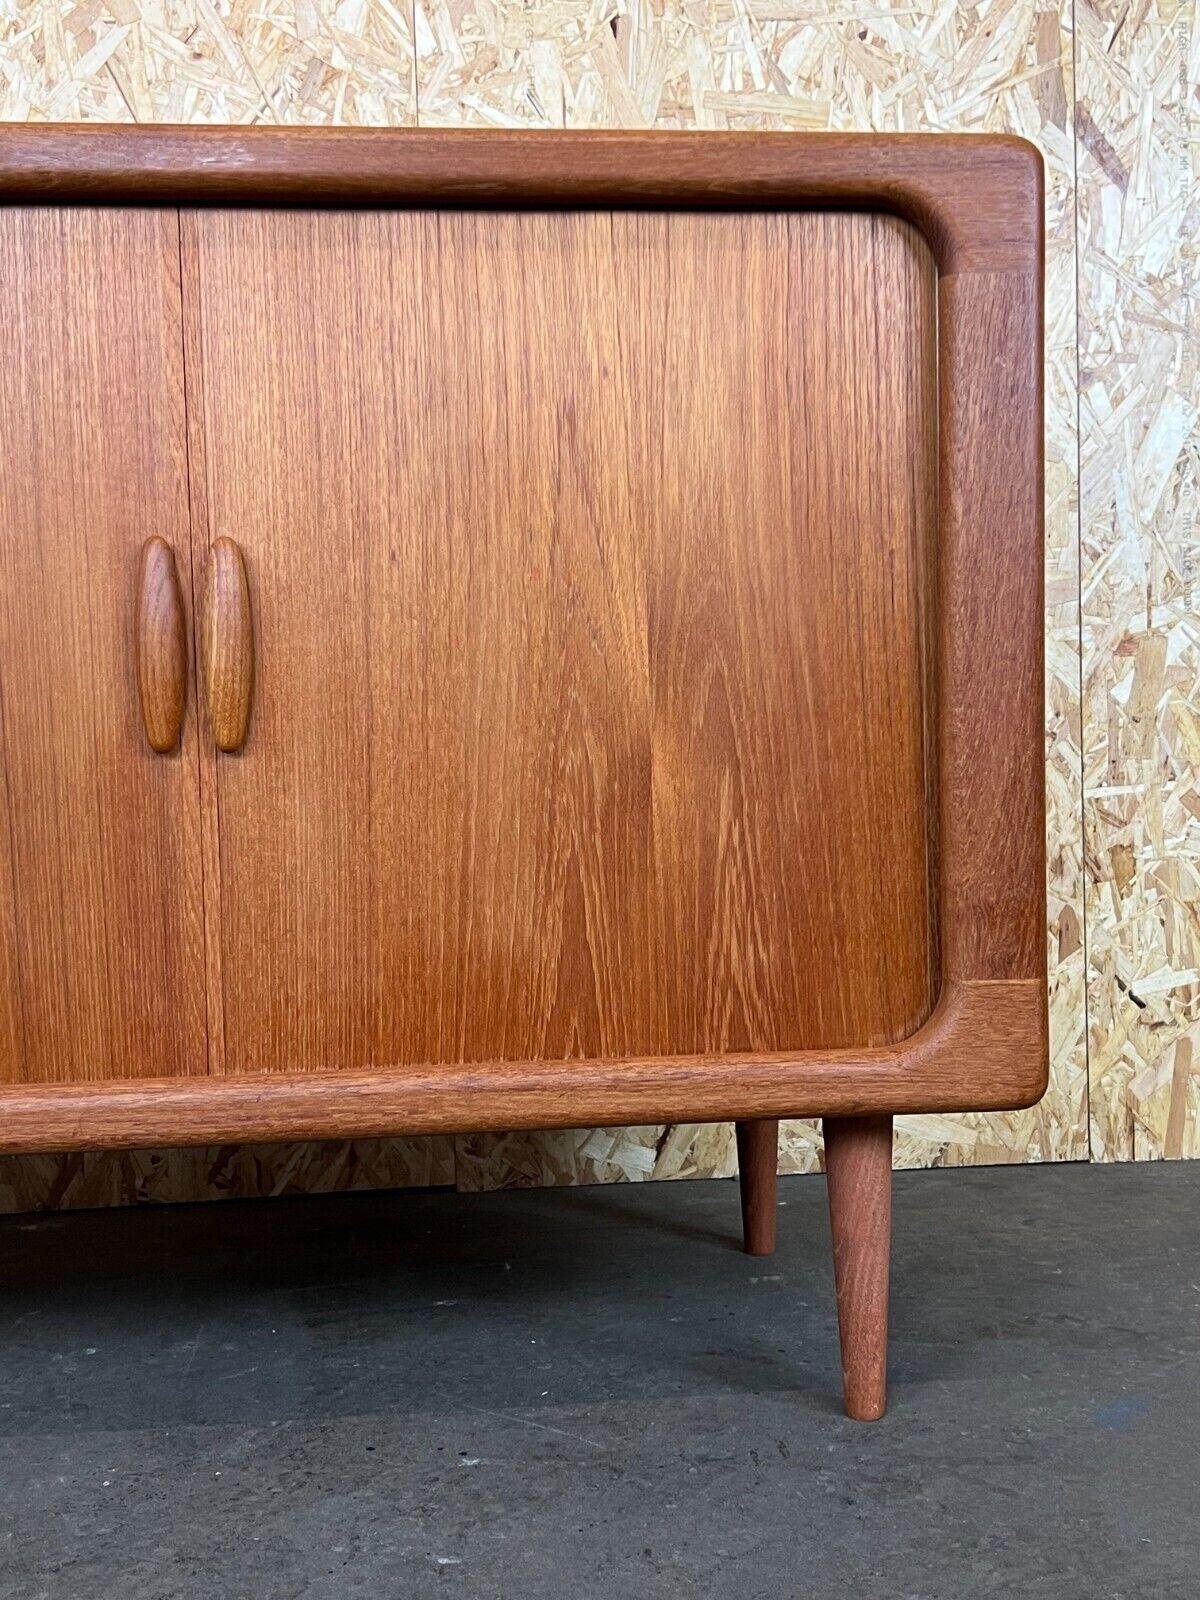 1960s-1970s Teak Dyrlund Sideboard Credenza Cabinet Danish Modern Design 2